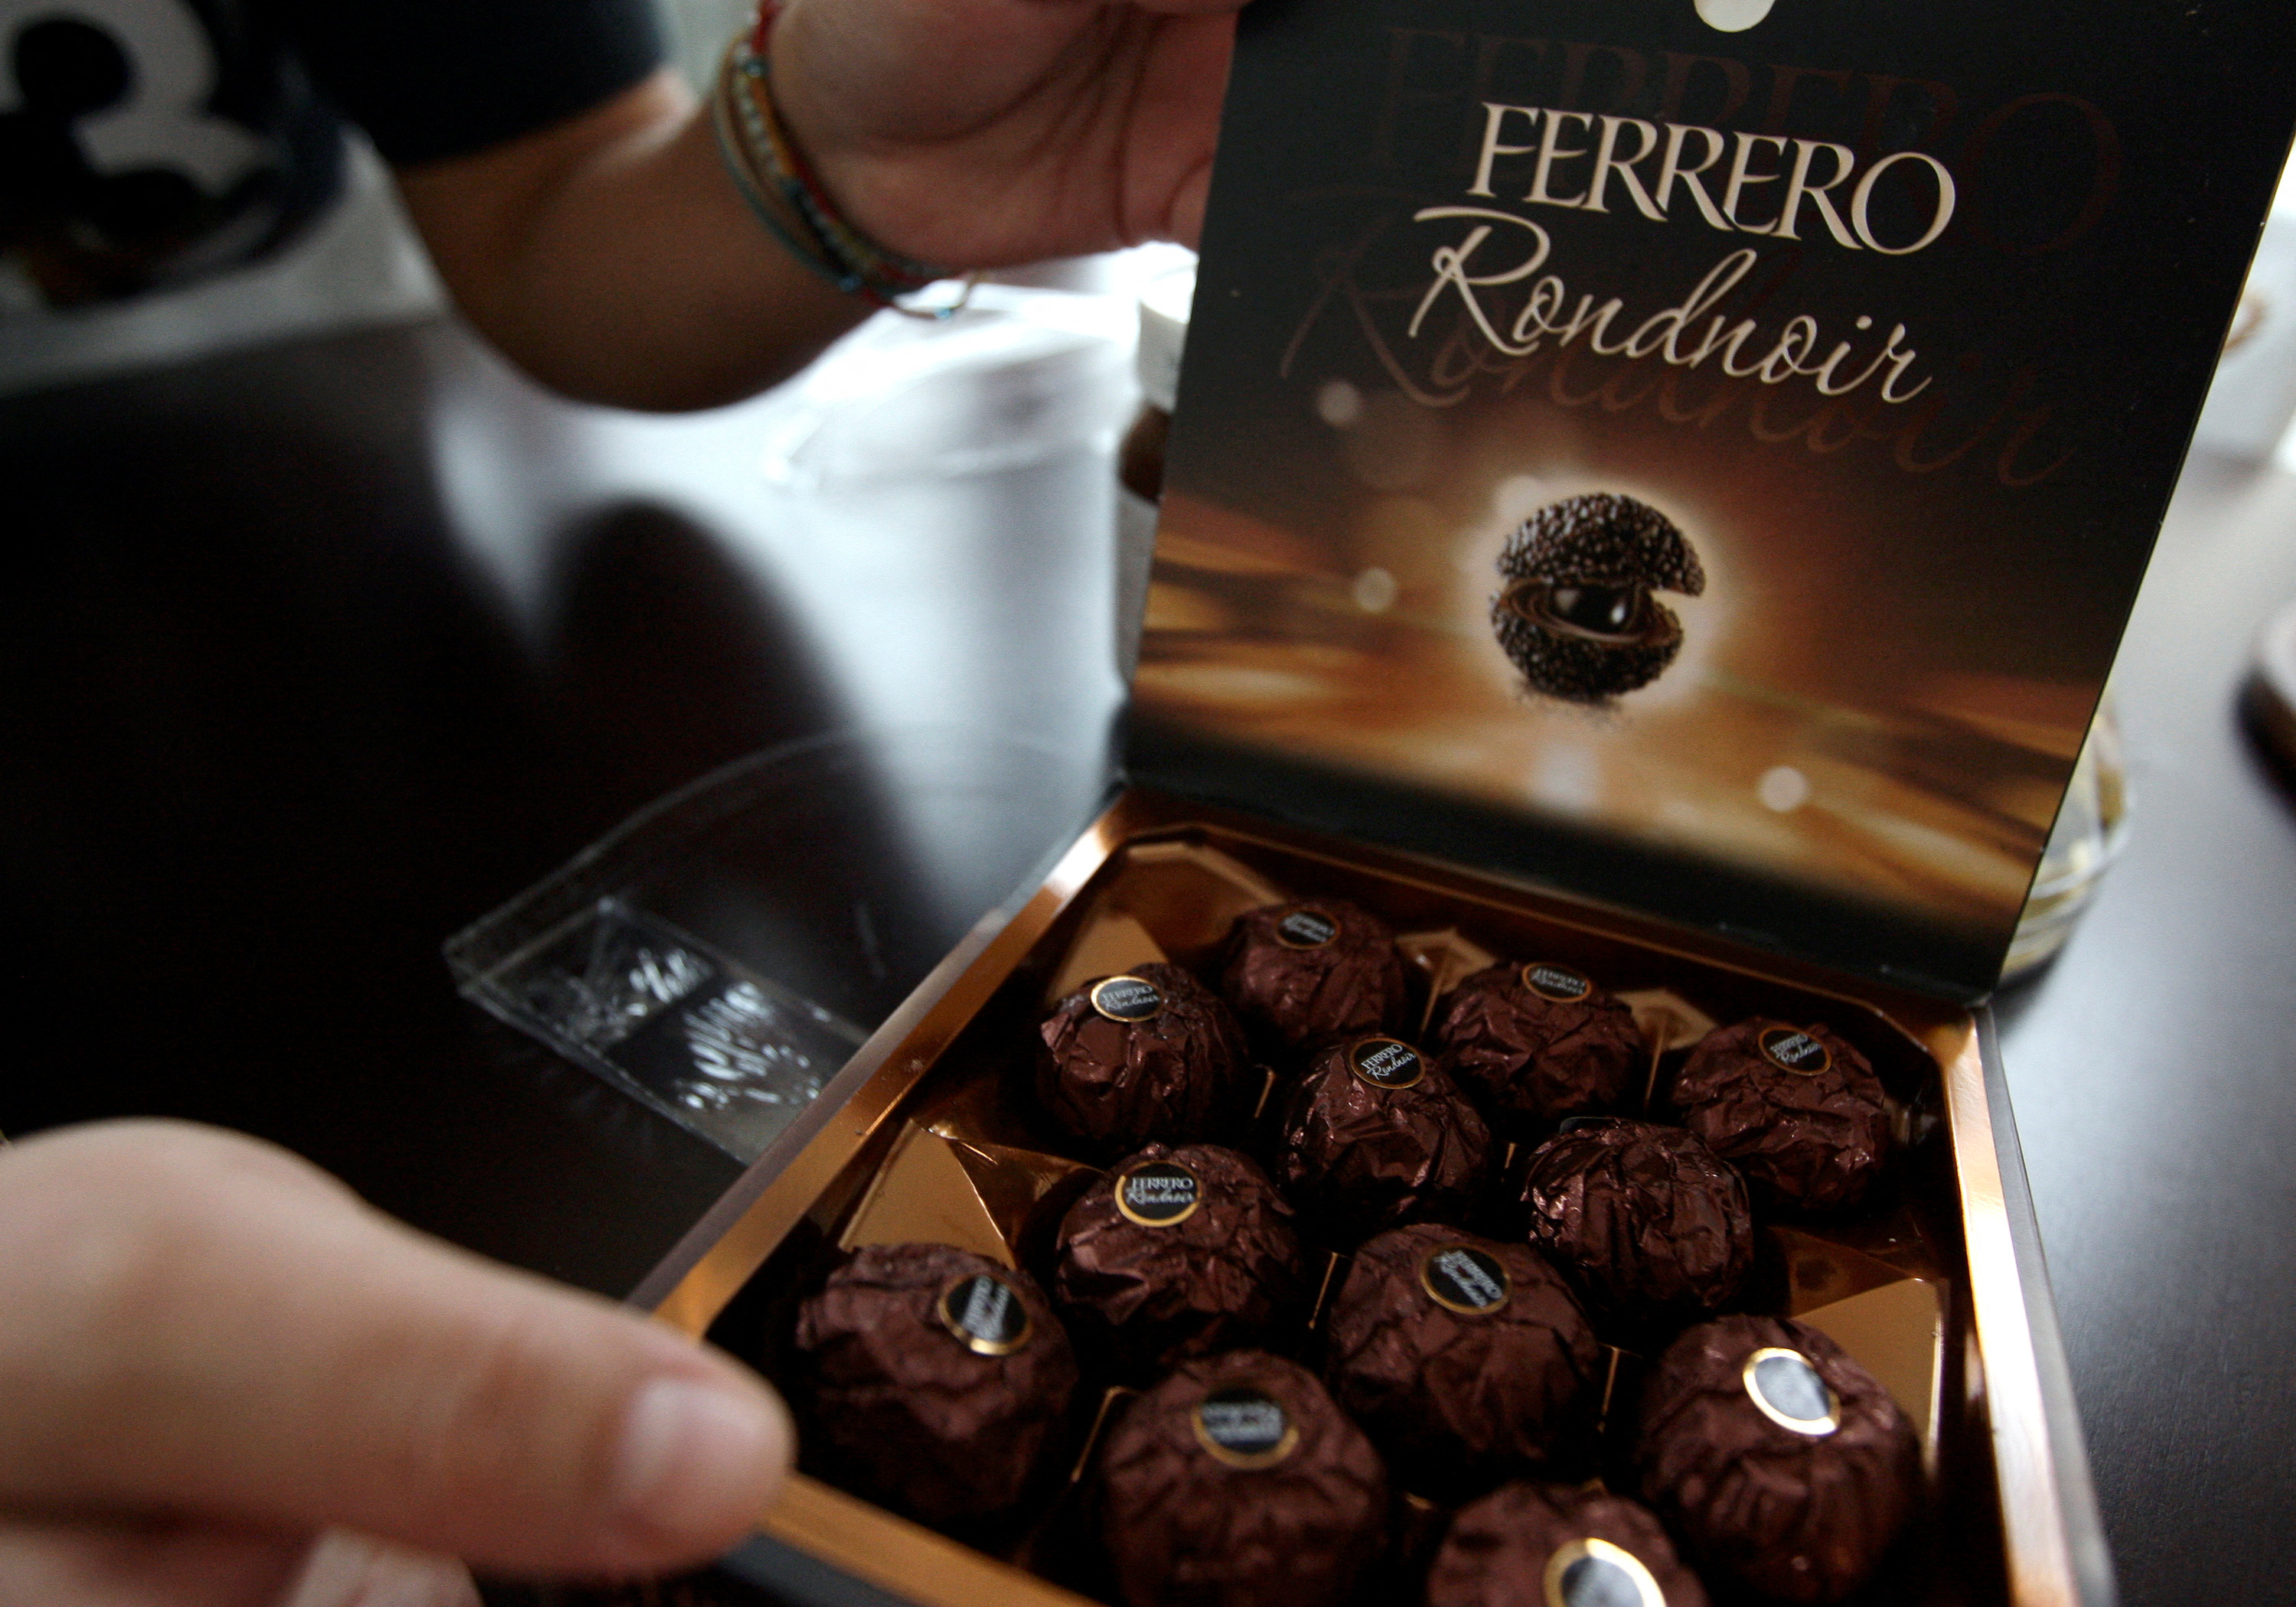 A woman displays a Ferrero chocolate box in Milan